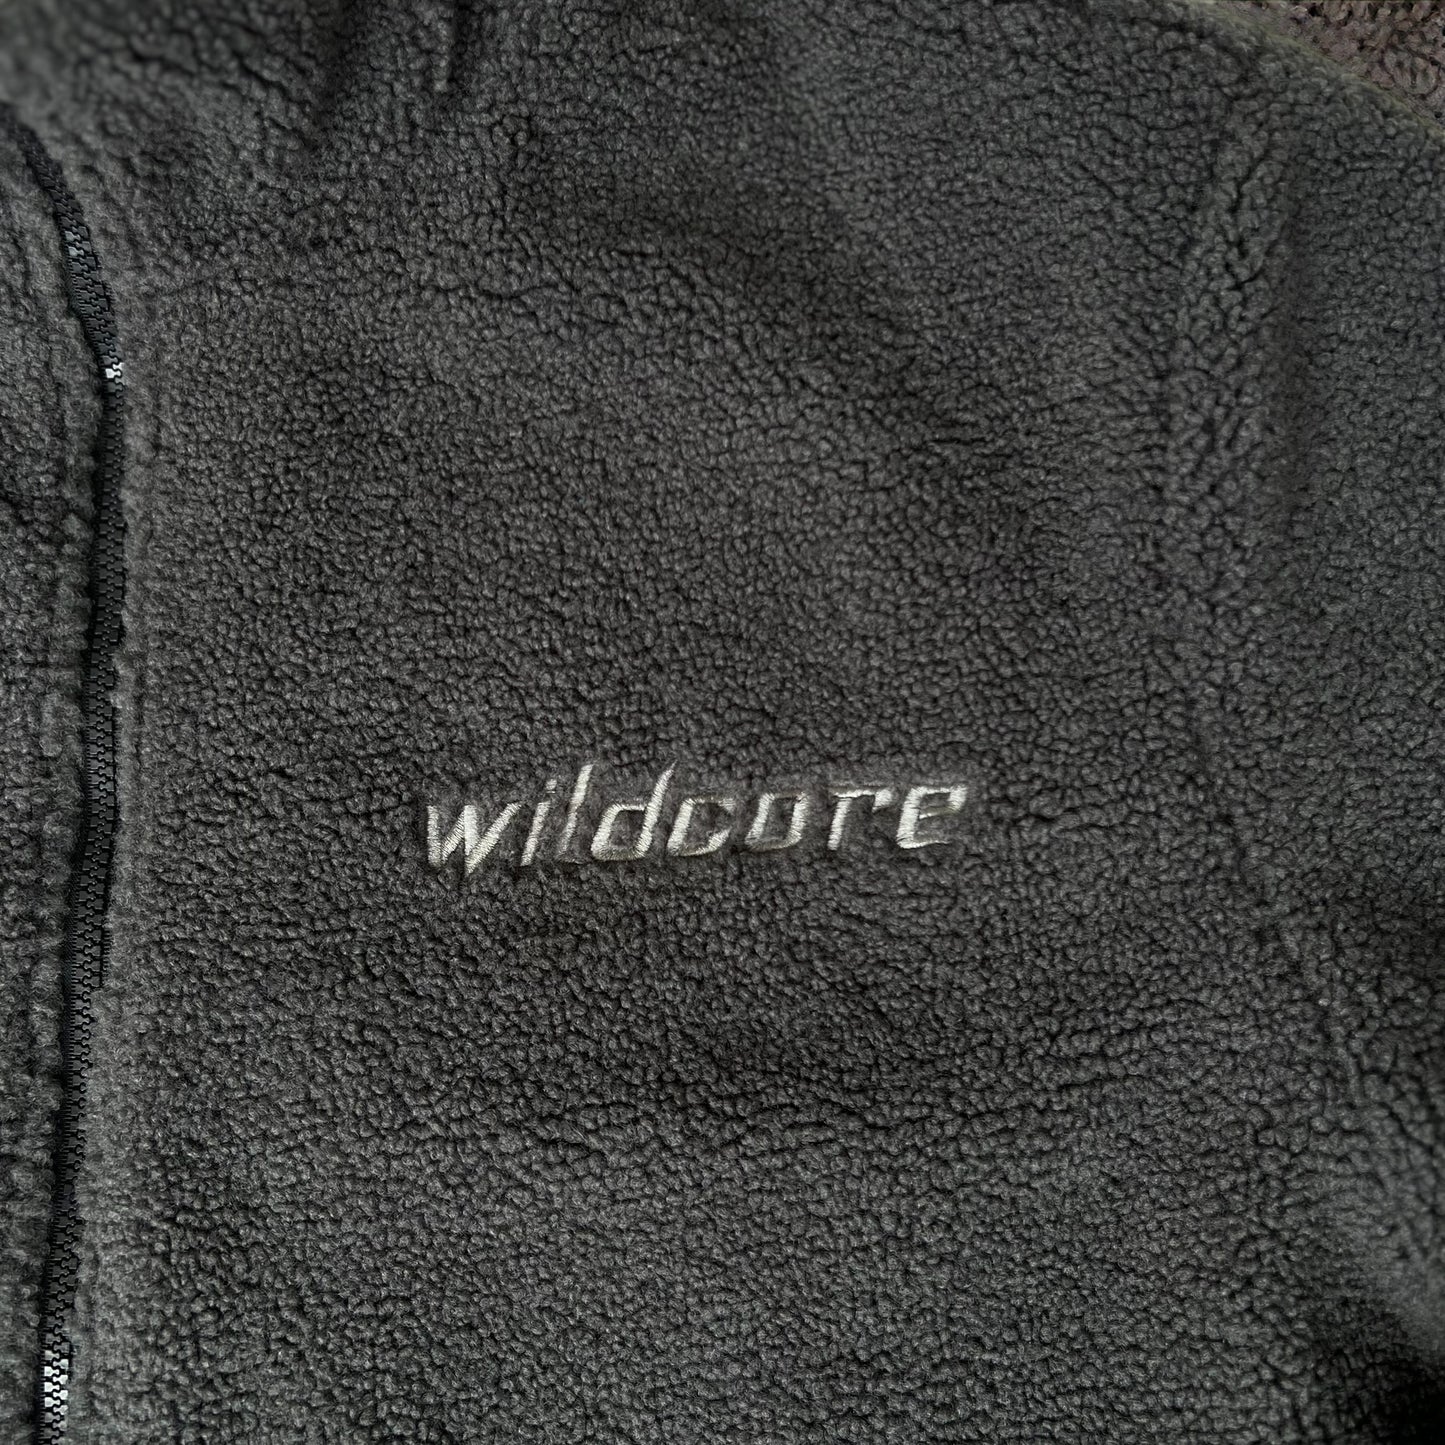 Wildcore Reversible Fleece-Raincoat